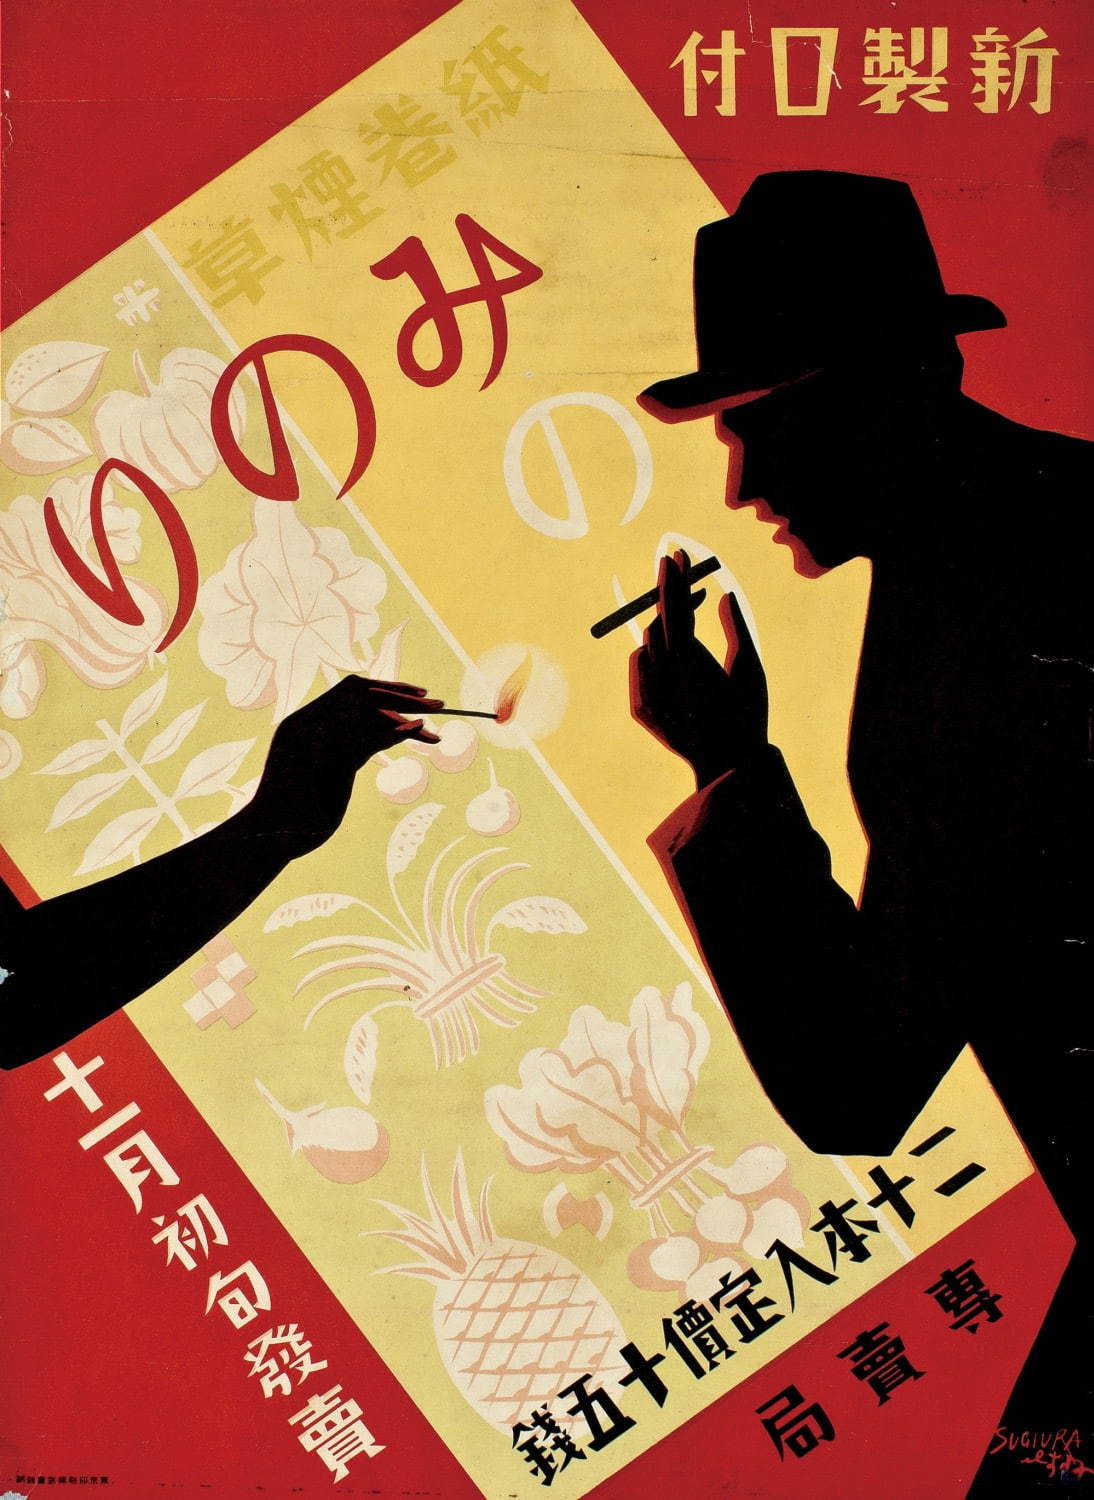 大蔵省専売局「みのり」ポスターデザイン：杉浦非水、1930年、オフセット、たばこと塩の博物館蔵